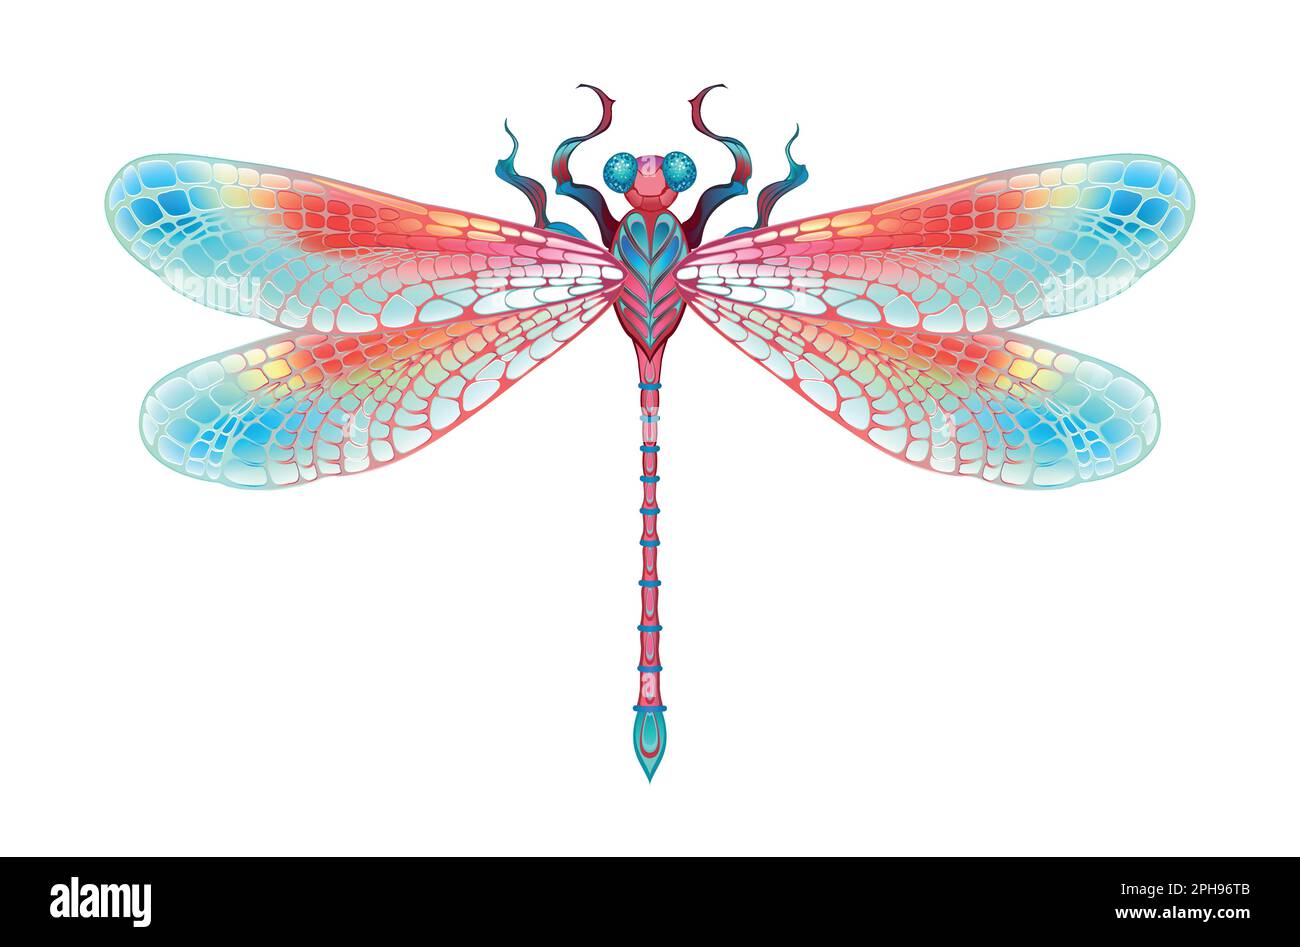 Rot, realistisch, symmetrisch, künstlerisch gezeichnet, in leuchtenden Farben mit strukturierten, detaillierten Flügeln auf weißem Hintergrund. Leuchtende Libelle. Stock Vektor